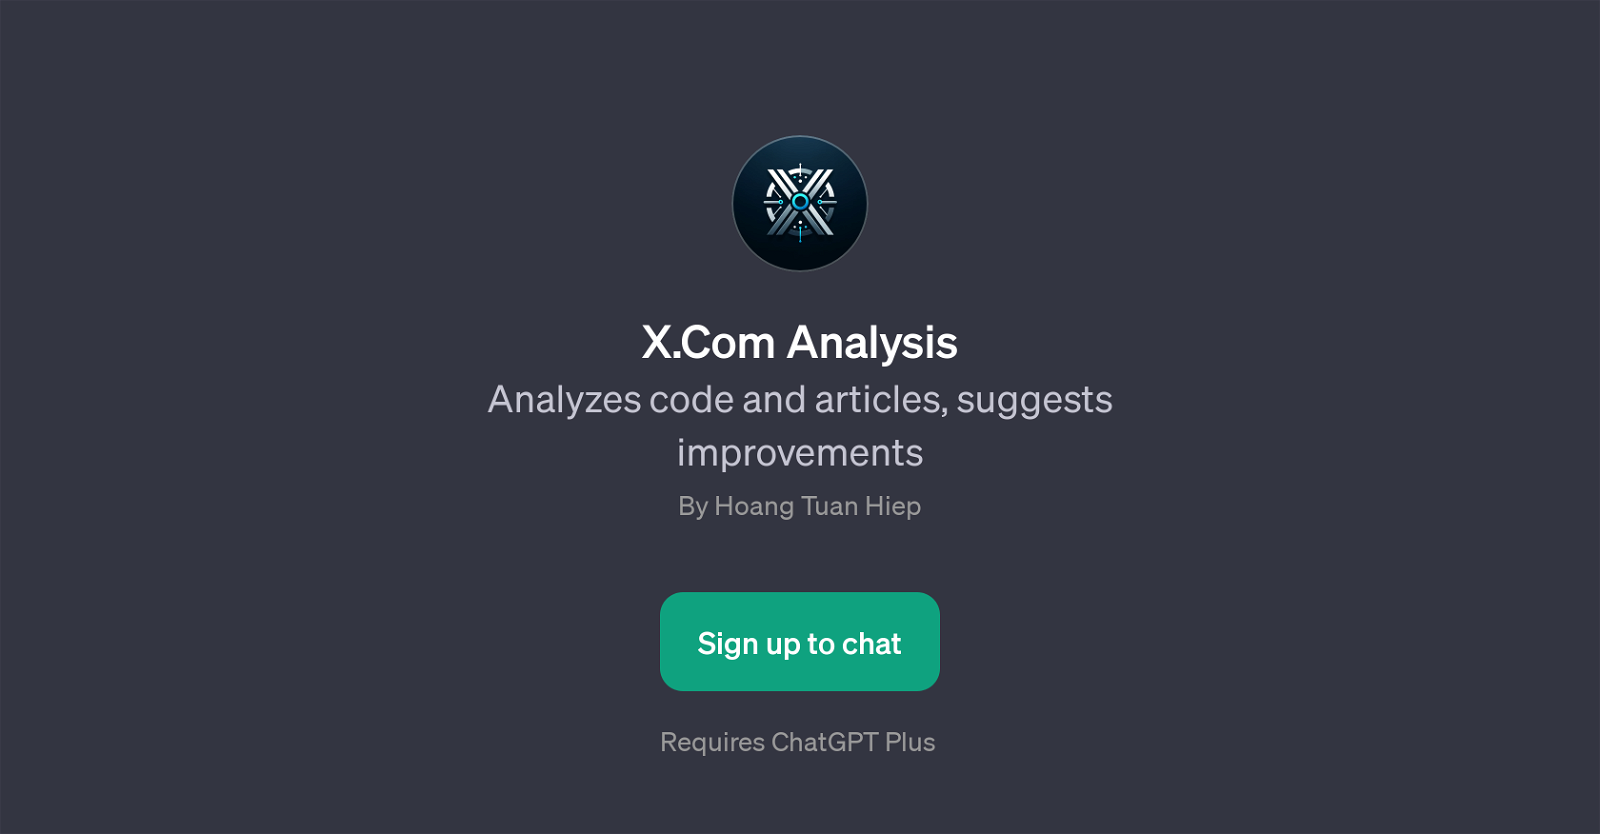 X.Com Analysis website